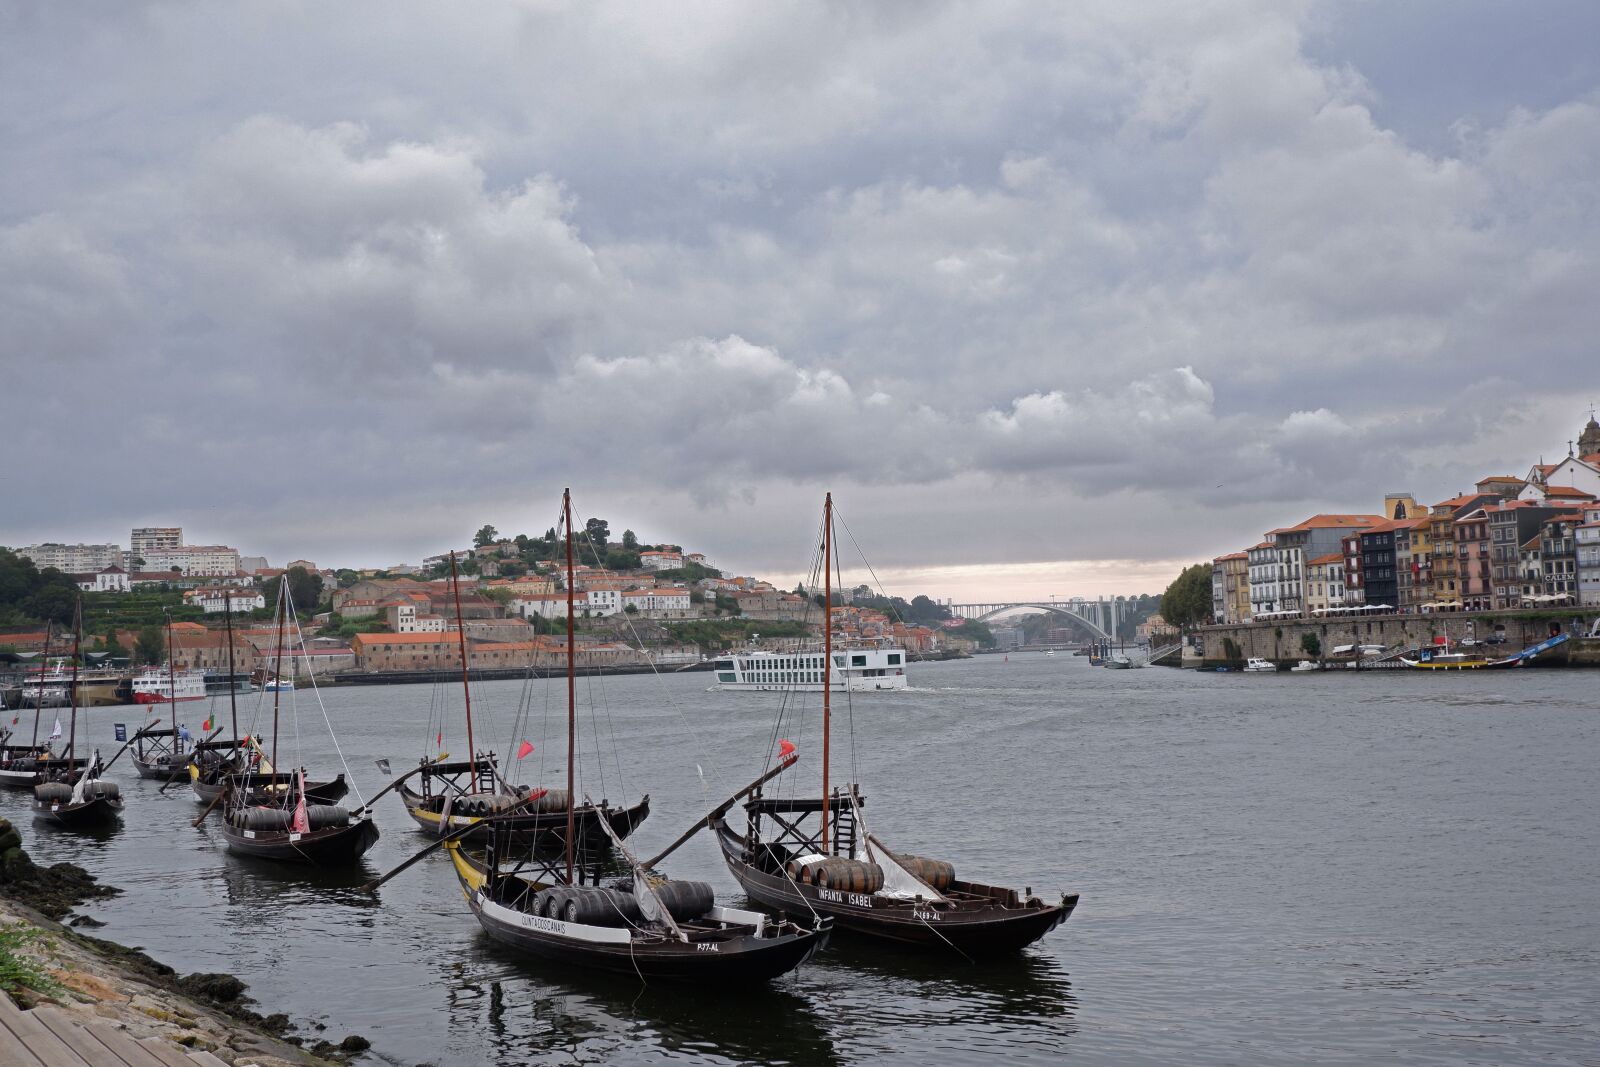 Fujifilm X-T100 sample photo. Porto, portugal, cityscape photography